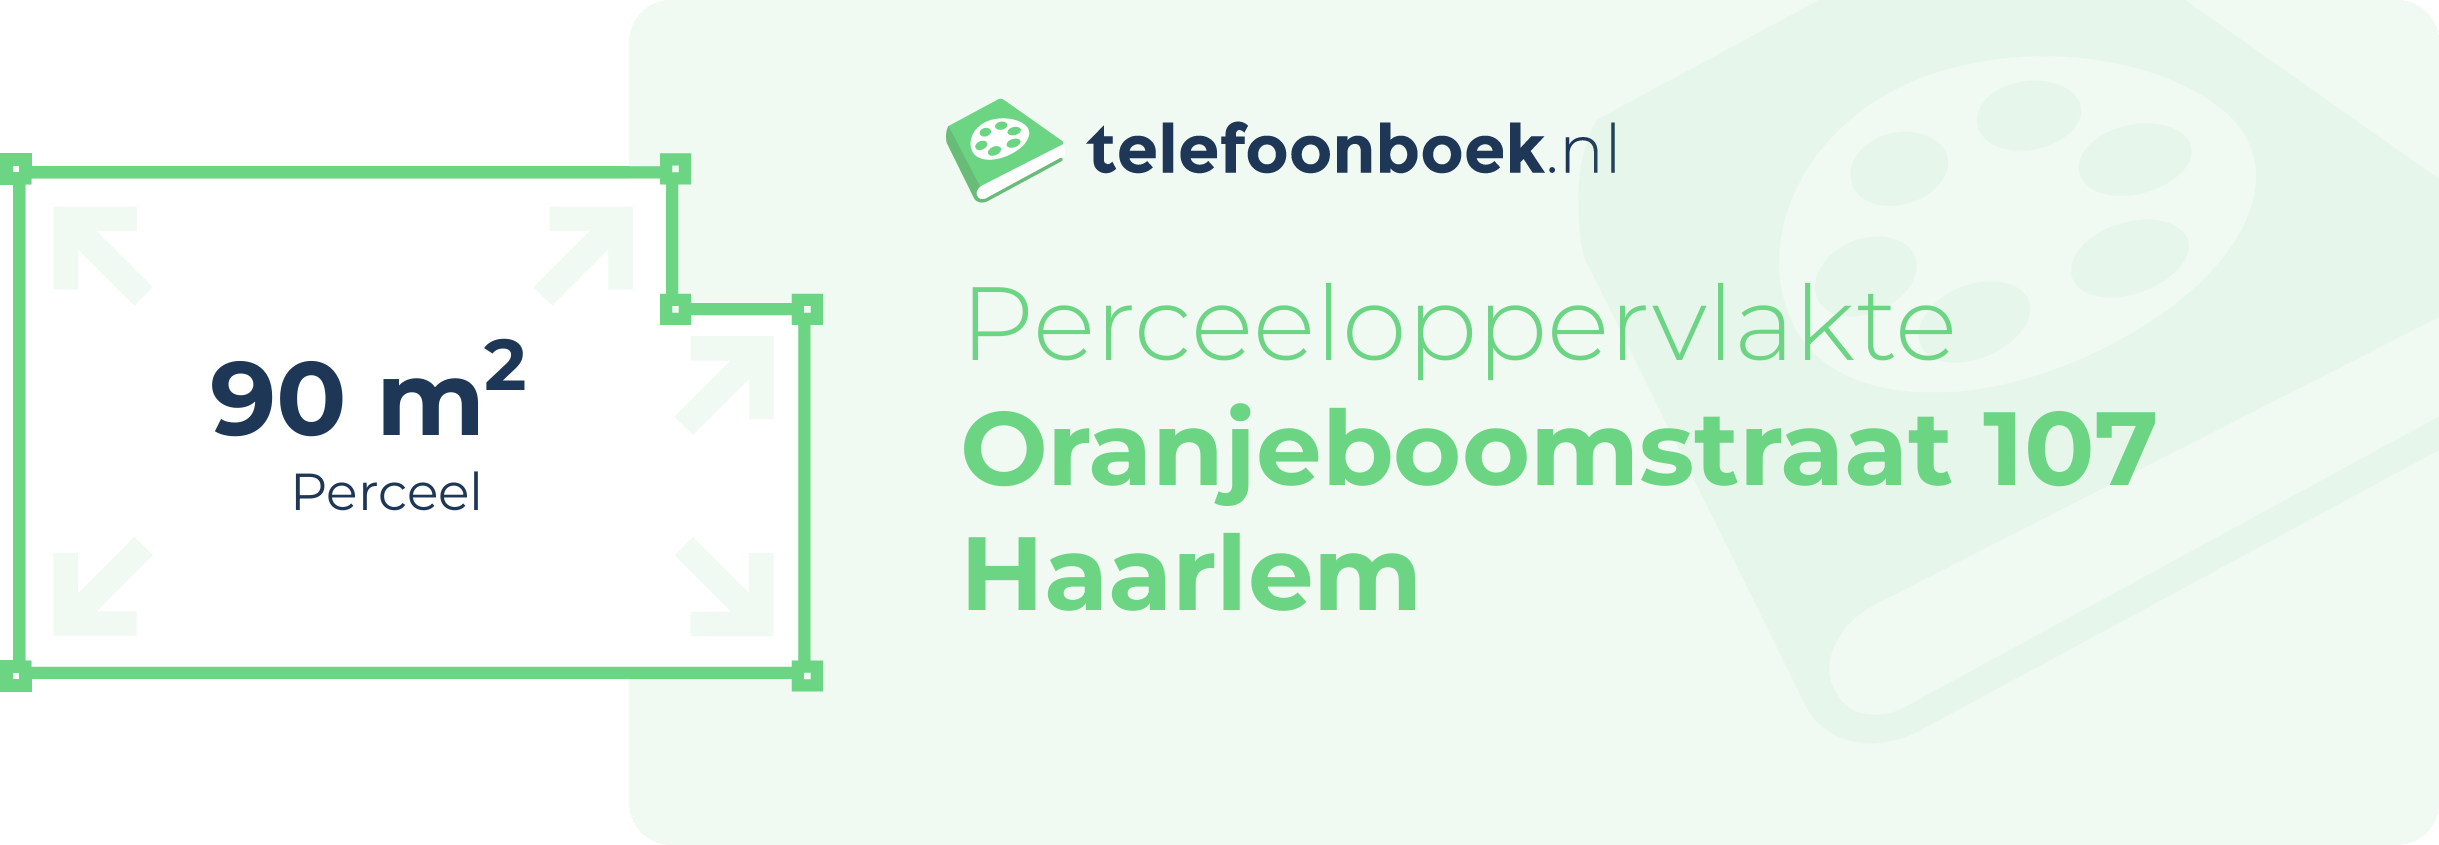 Perceeloppervlakte Oranjeboomstraat 107 Haarlem